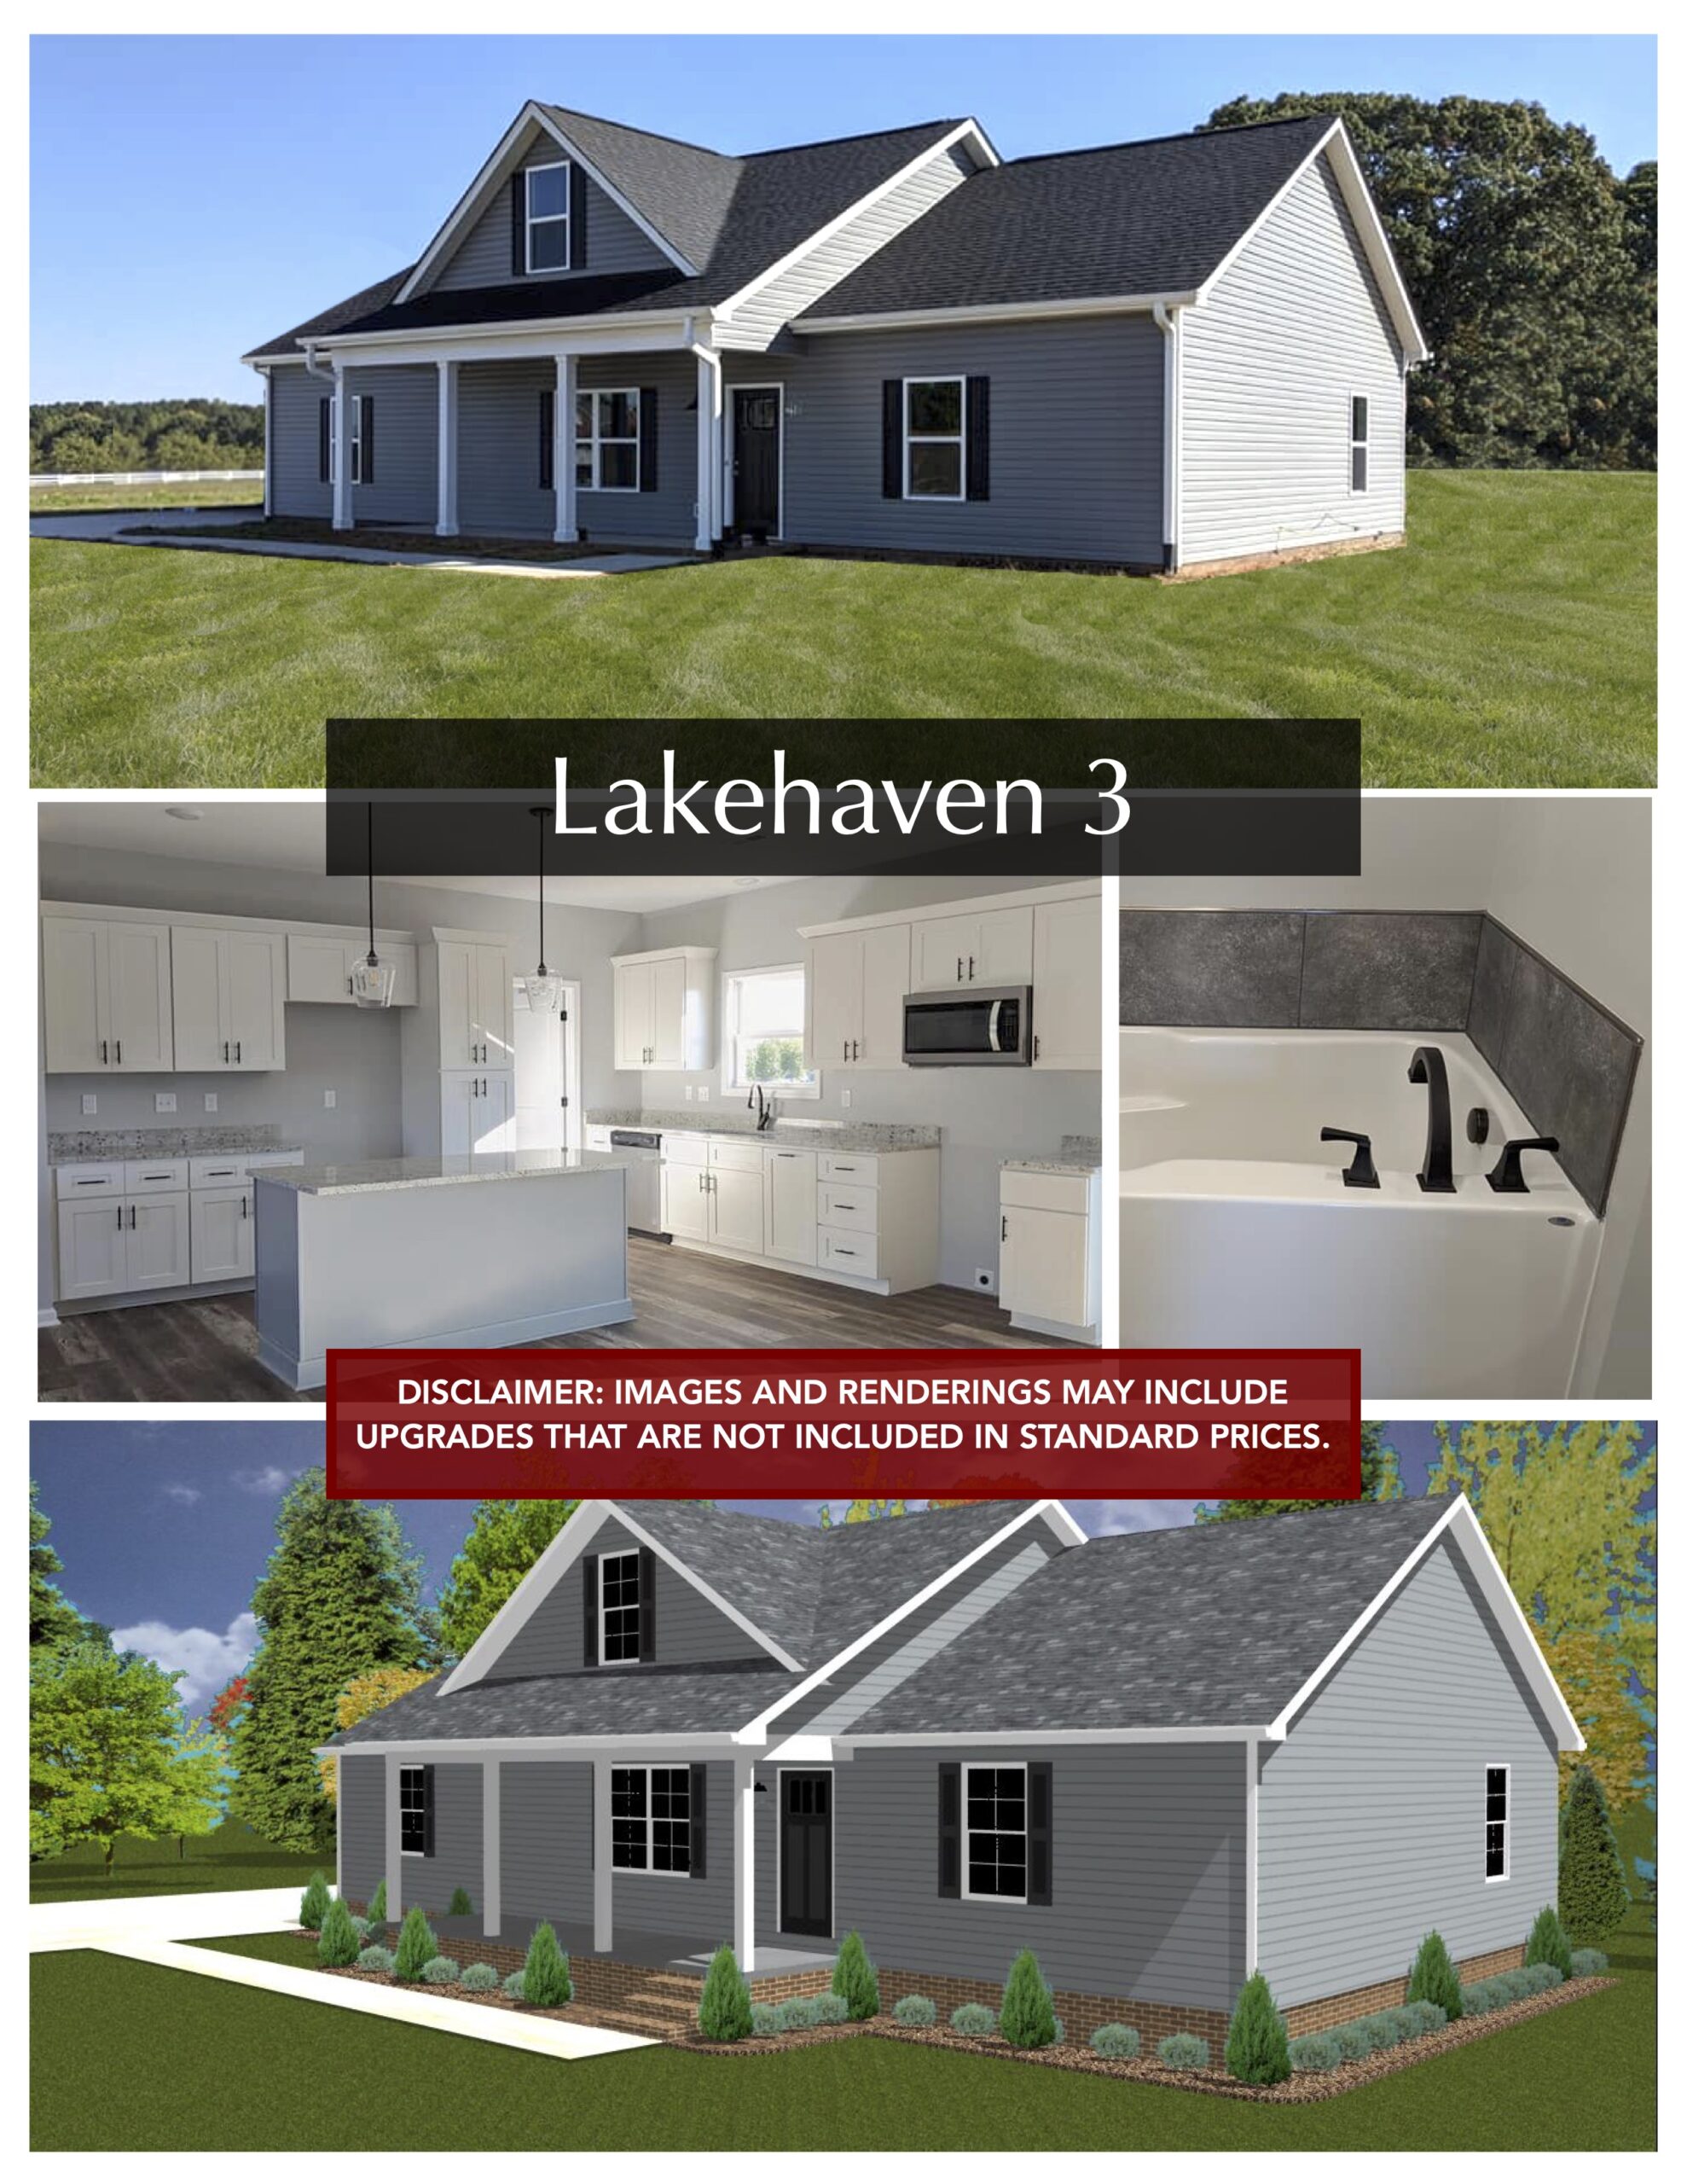 the lakehaven 3 plan